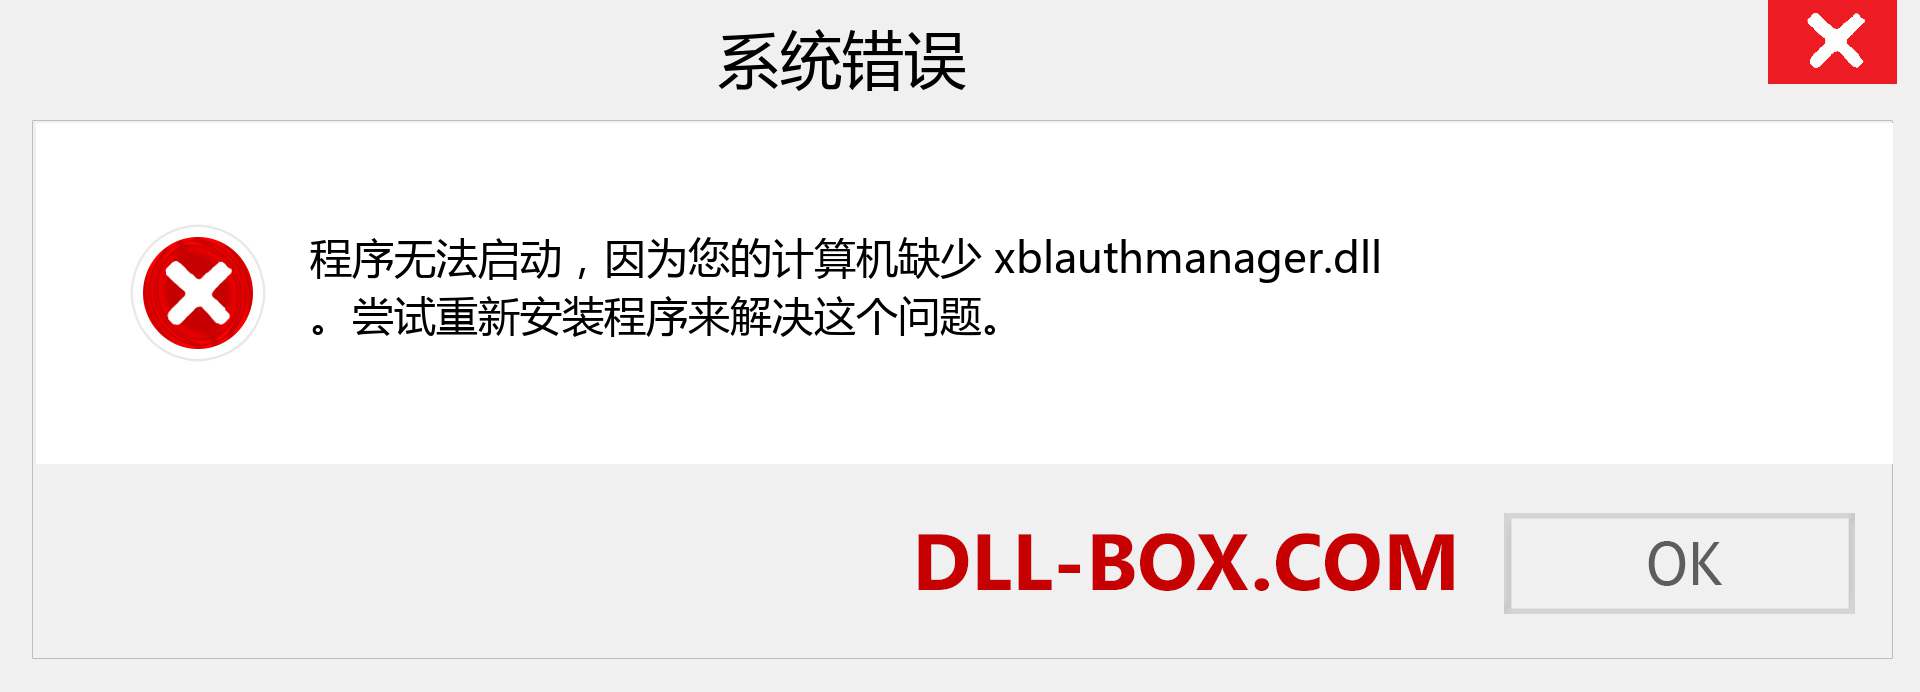 xblauthmanager.dll 文件丢失？。 适用于 Windows 7、8、10 的下载 - 修复 Windows、照片、图像上的 xblauthmanager dll 丢失错误